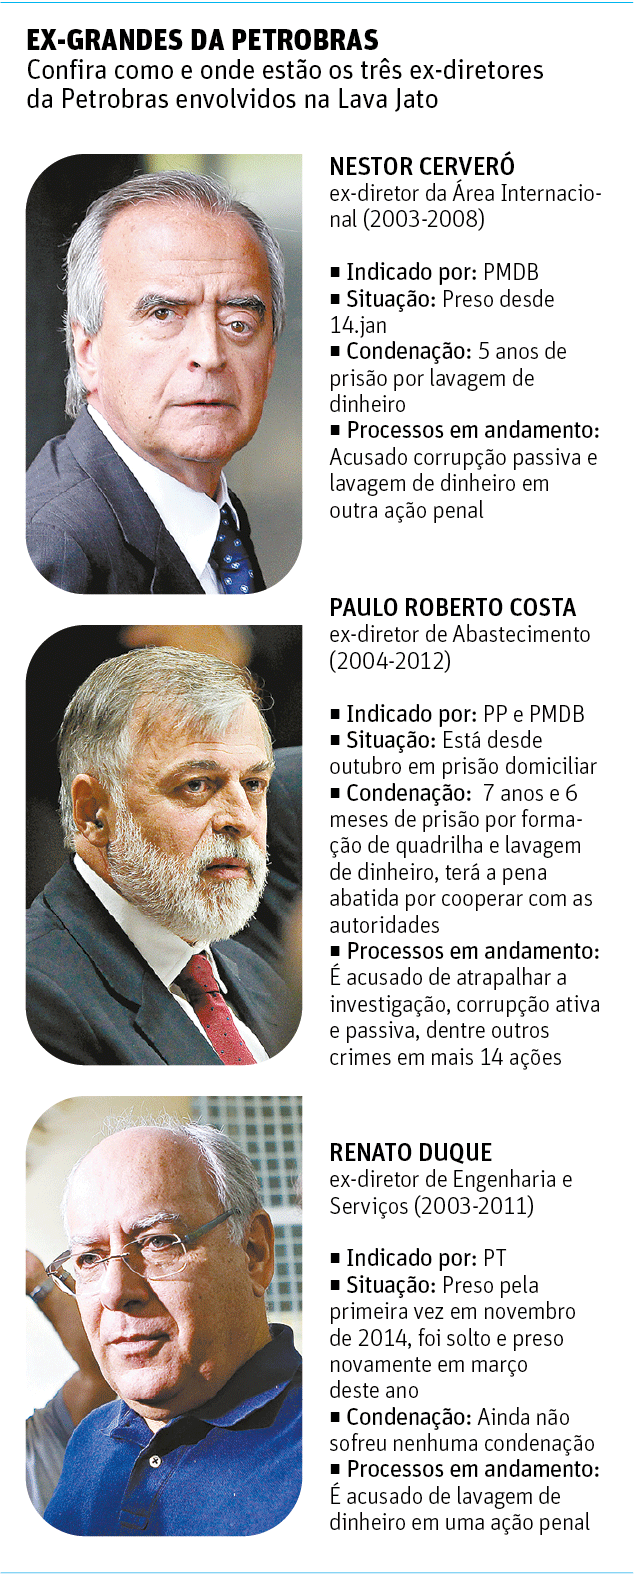 Folha de So Paulo - 27/05/15 - PETROLO: Os ex-grandes da Petrobras - Editoria de Arte/Folhapress